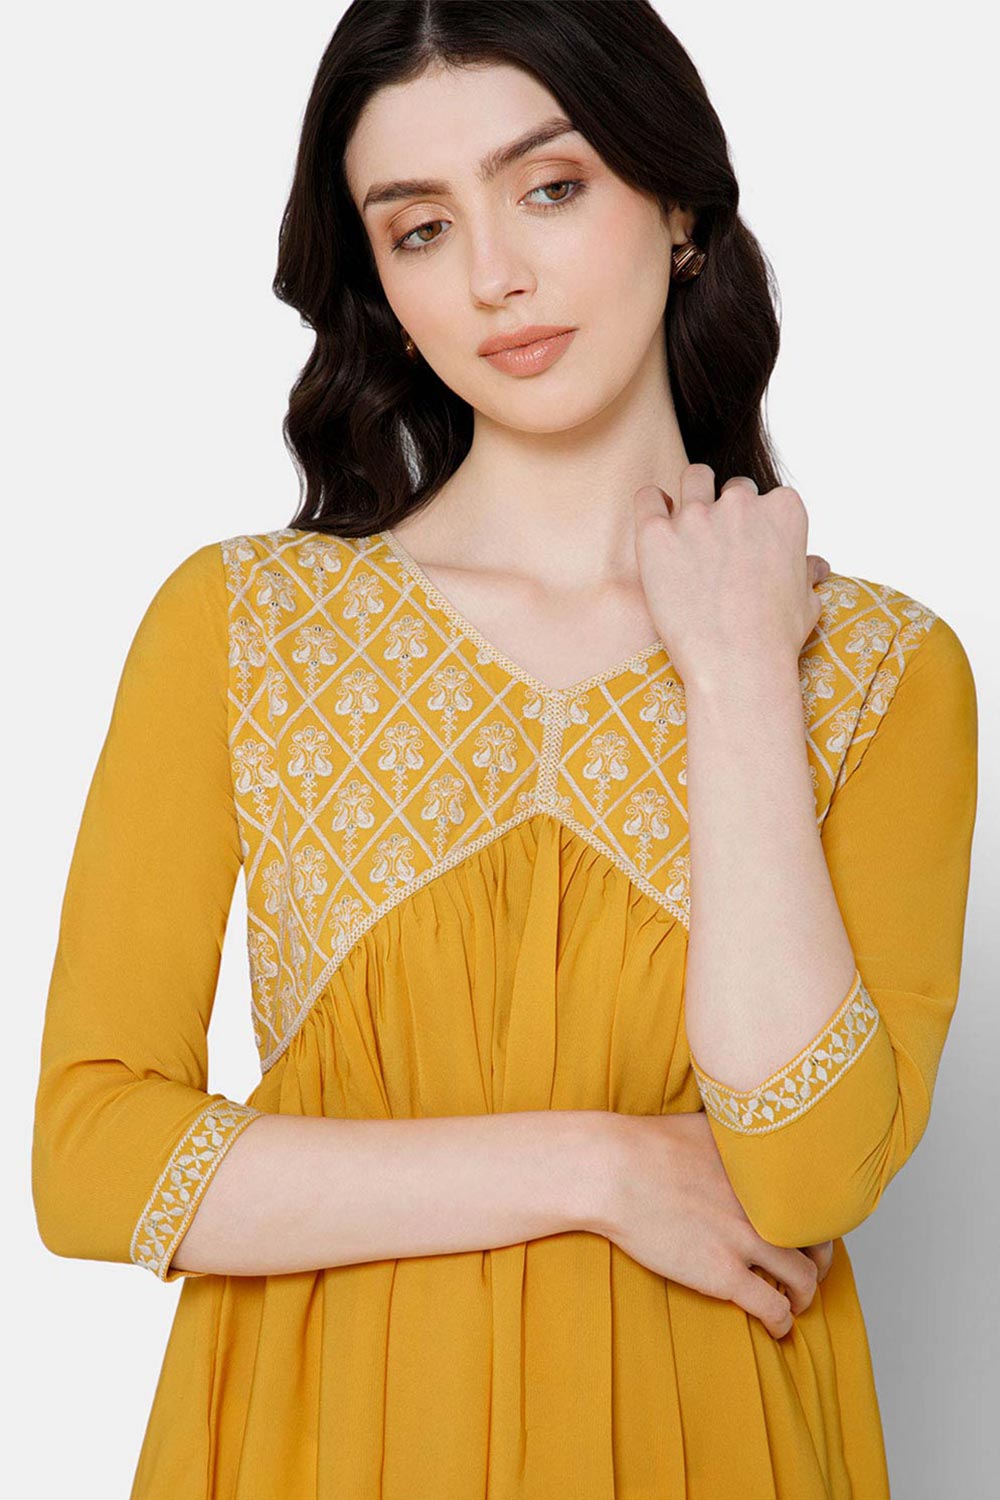 Mythri Women's Ethnic wear Kurthi with Elaborately Embroidered Front Yoke Design - Yellow - E071